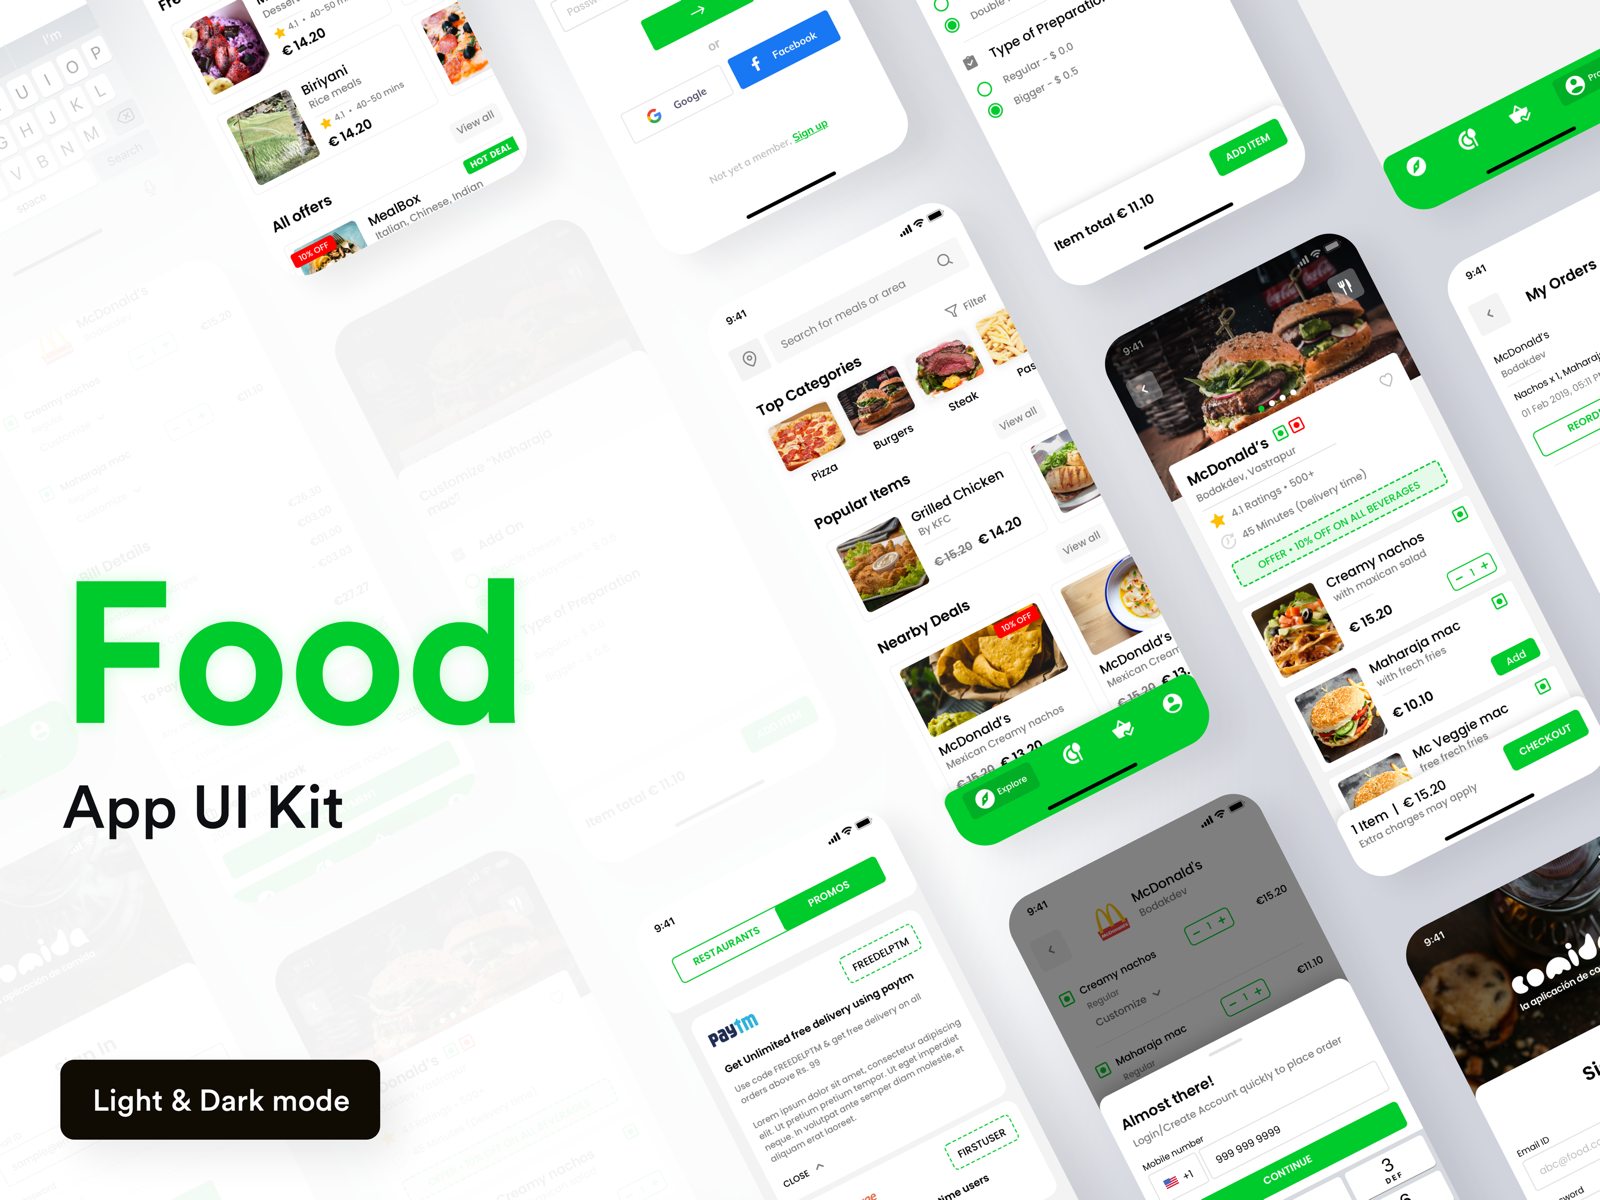 Comida Food App UI Kit by Cohort on Dribbble